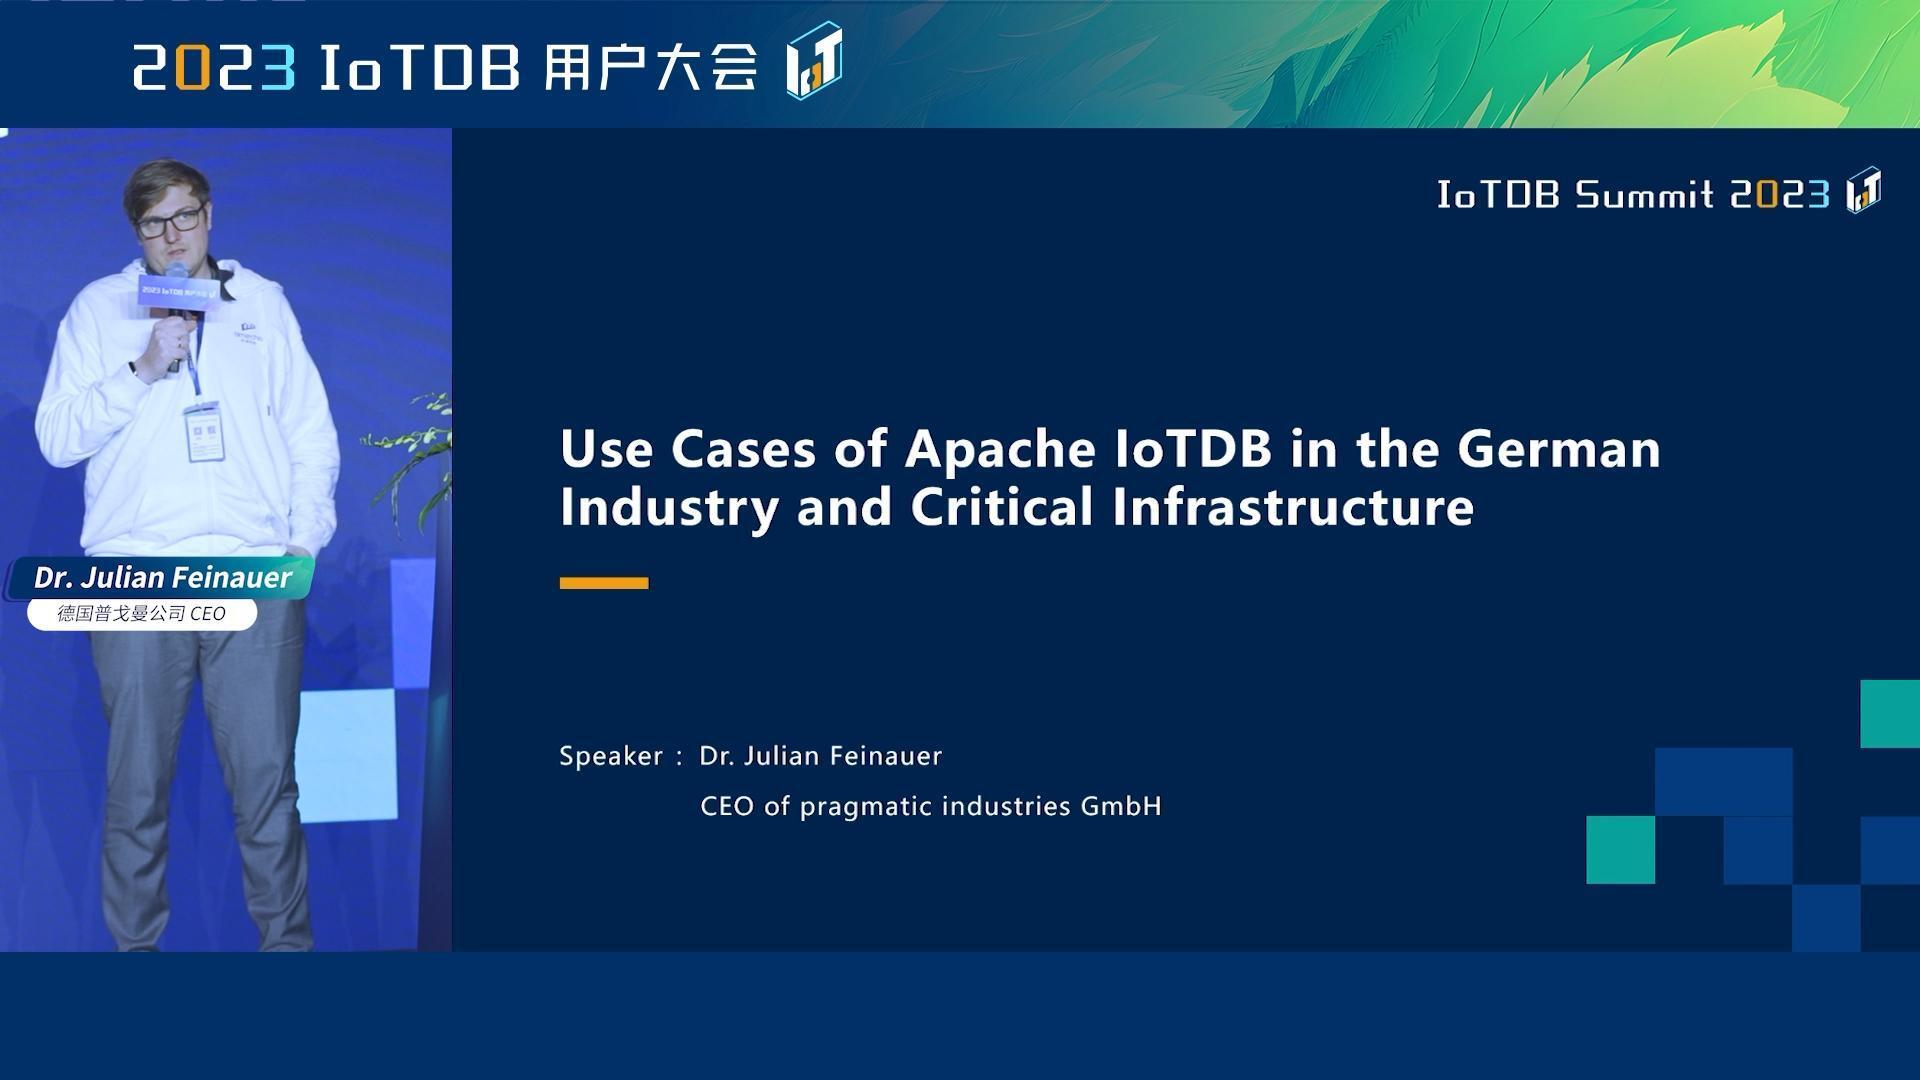 2023 IoTDB Summit：Dr. Julian Feinauer《Apache IoTDB 在德国工业和关键基础设施中的应用》